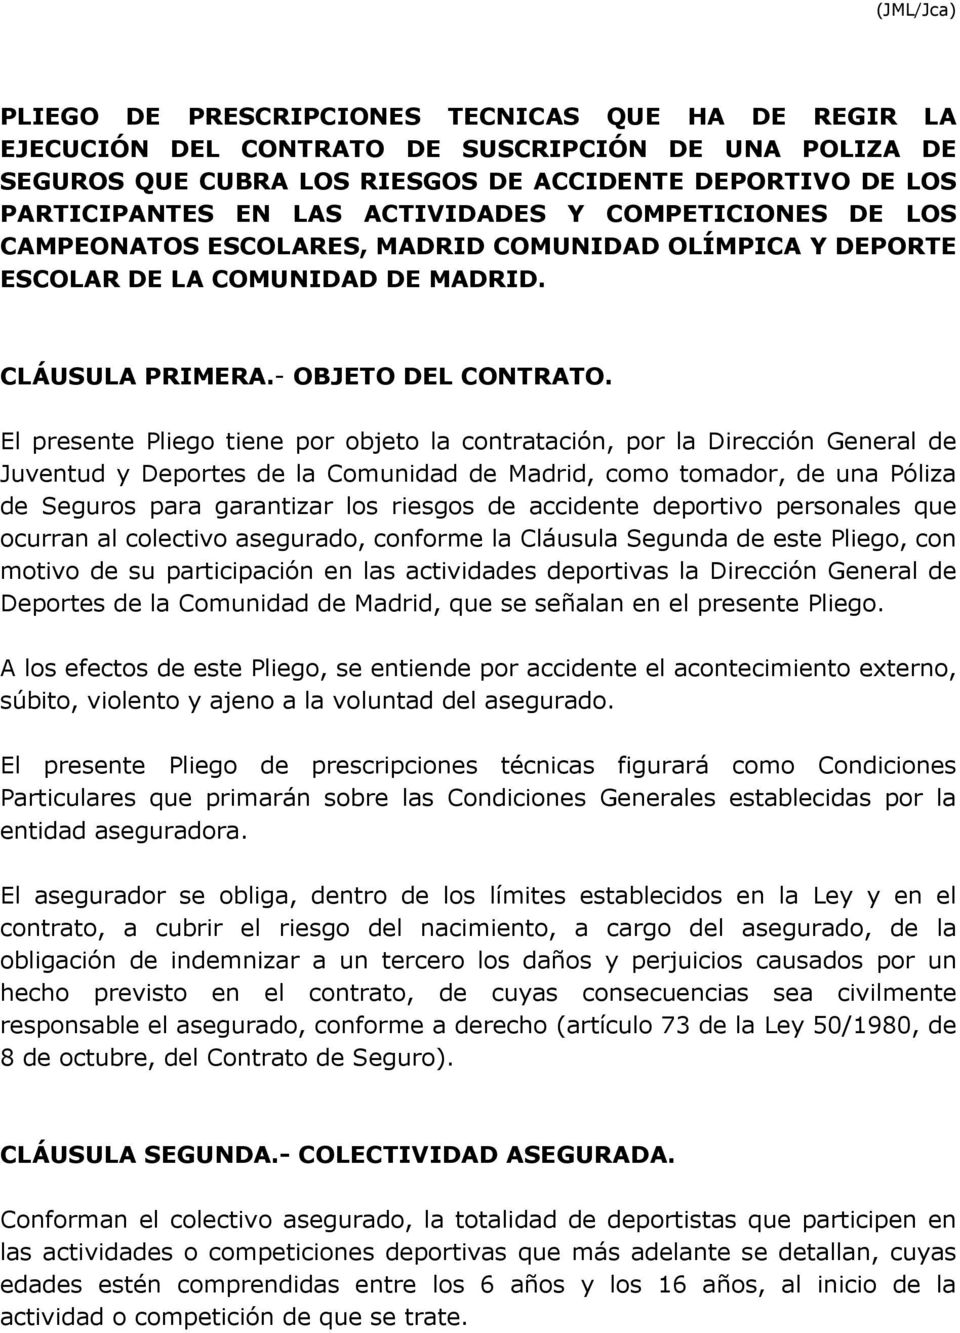 El presente Pliego tiene por objeto la contratación, por la Dirección General de Juventud y Deportes de la Comunidad de Madrid, como tomador, de una Póliza de Seguros para garantizar los riesgos de